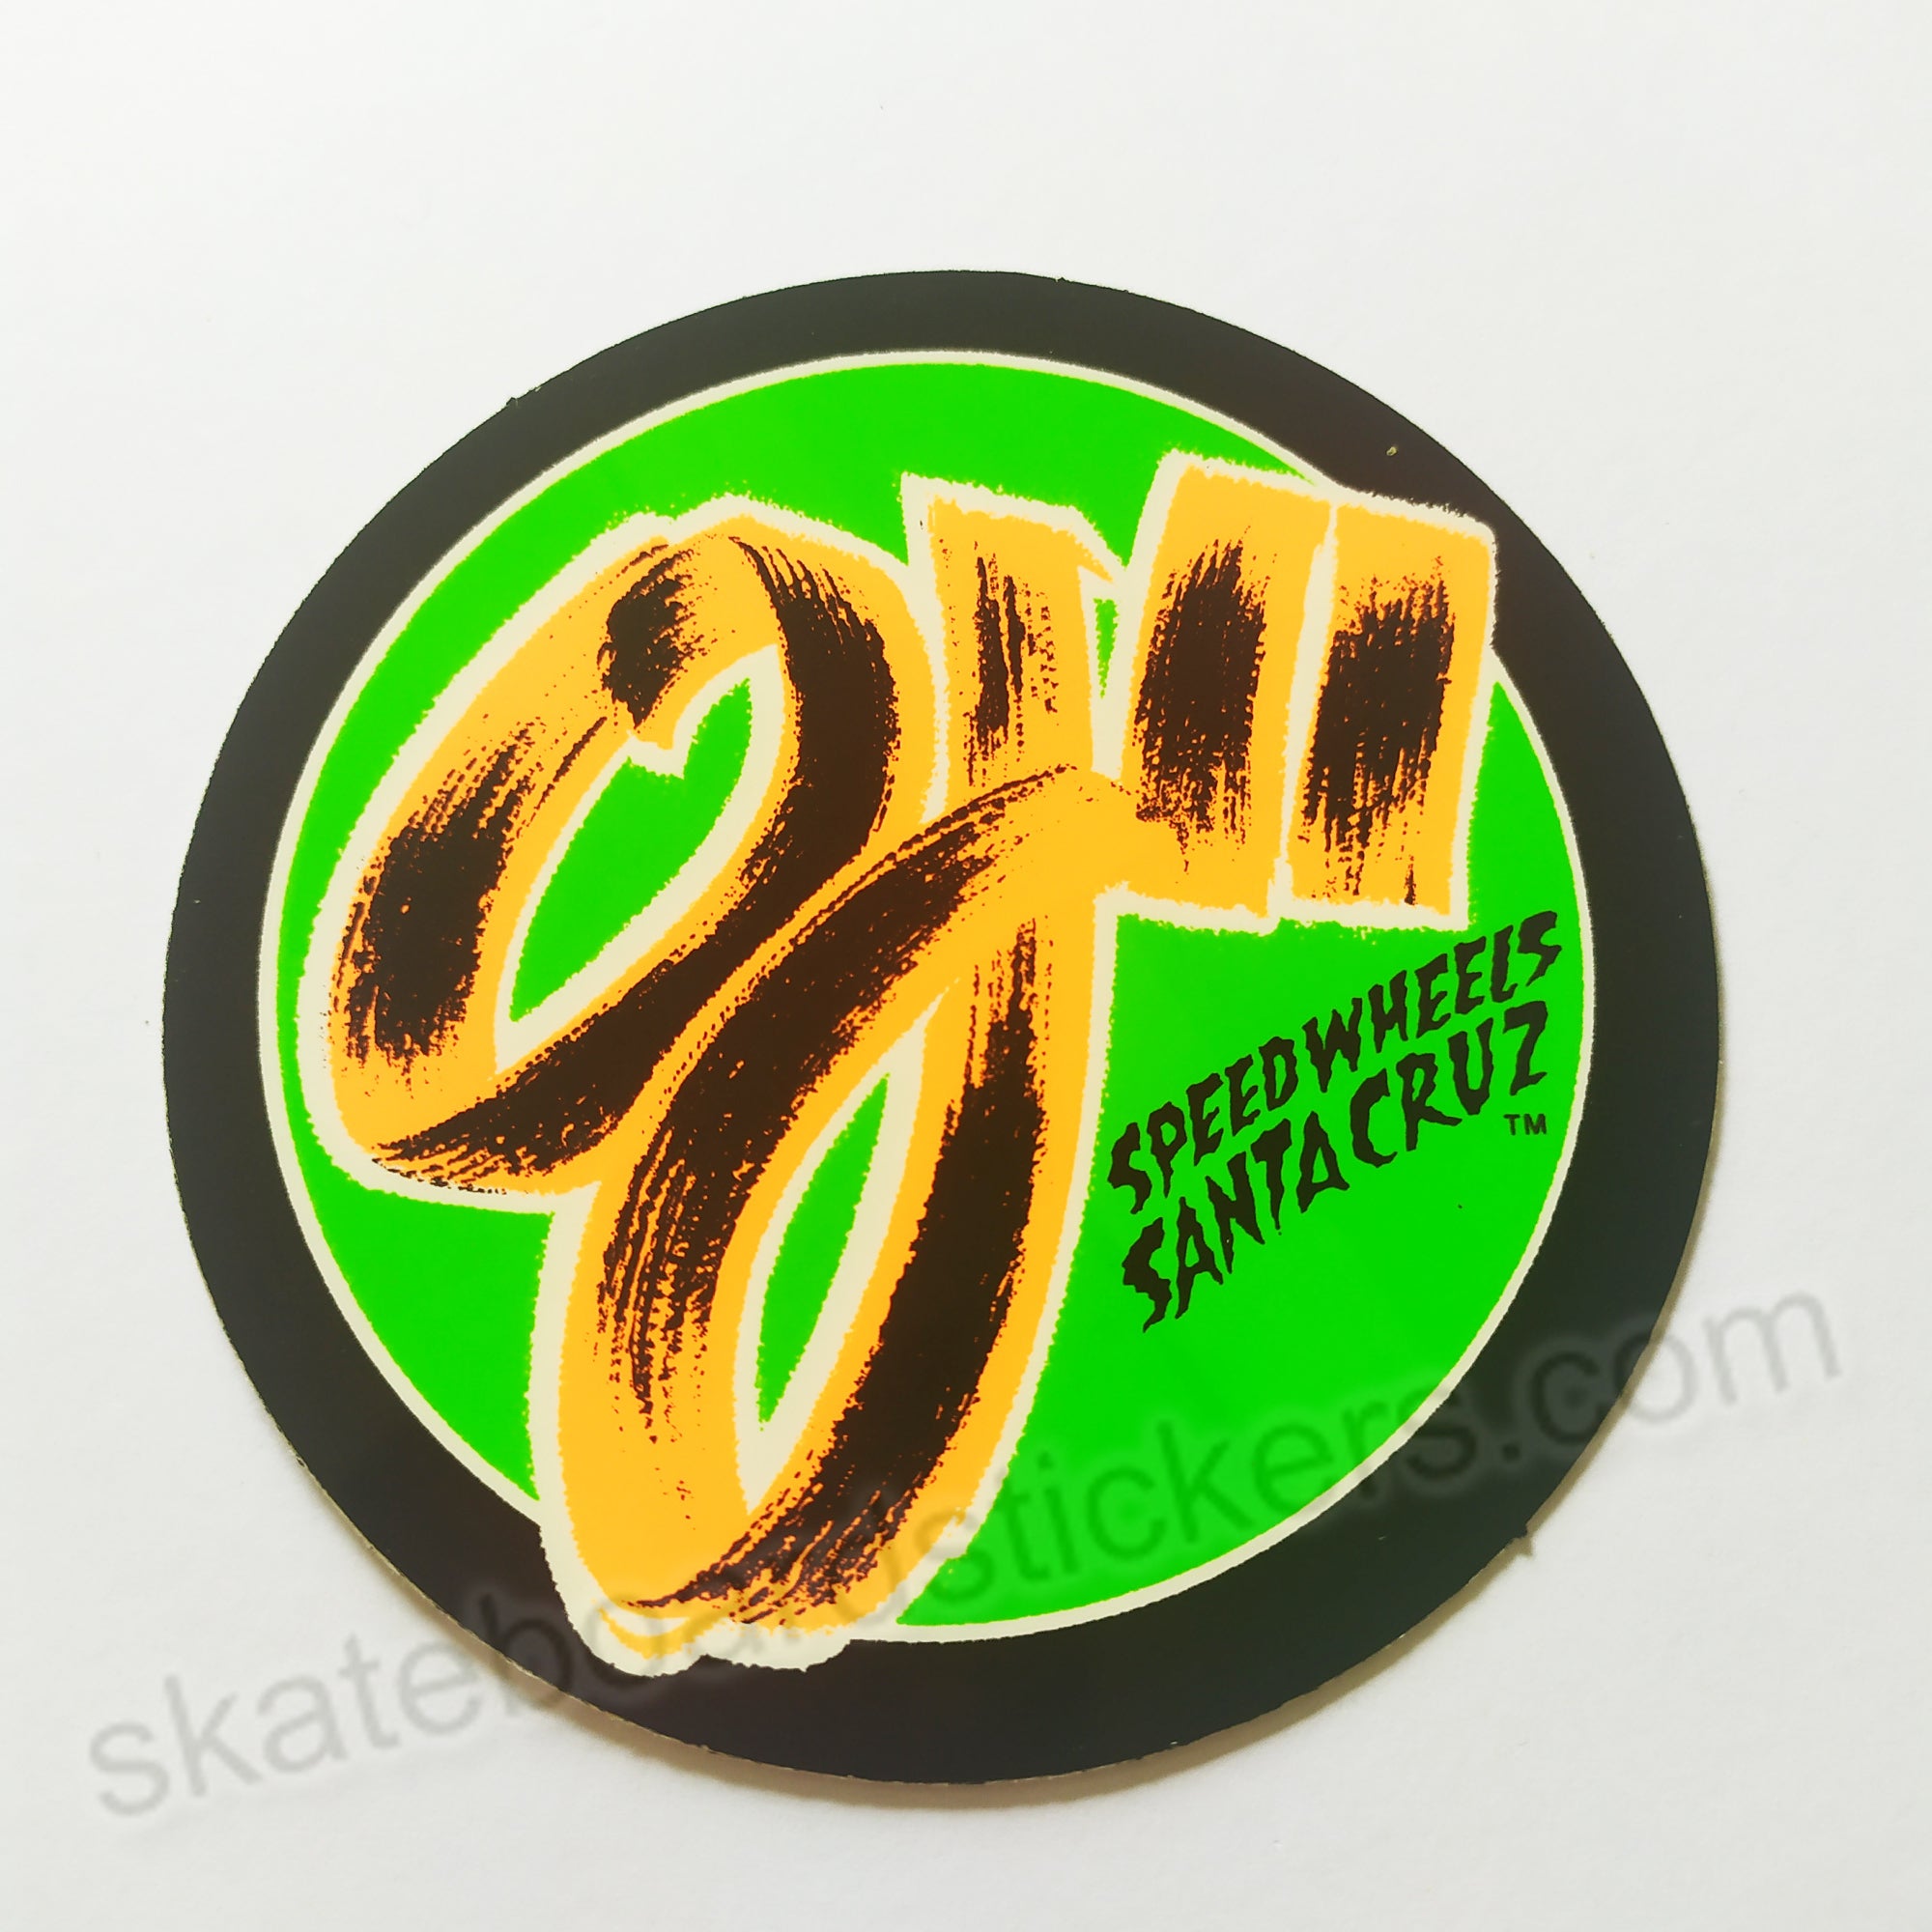 Santa Cruz / OJ Wheels "Speed Wheels" Old School Skateboard Sticker - SkateboardStickers.com